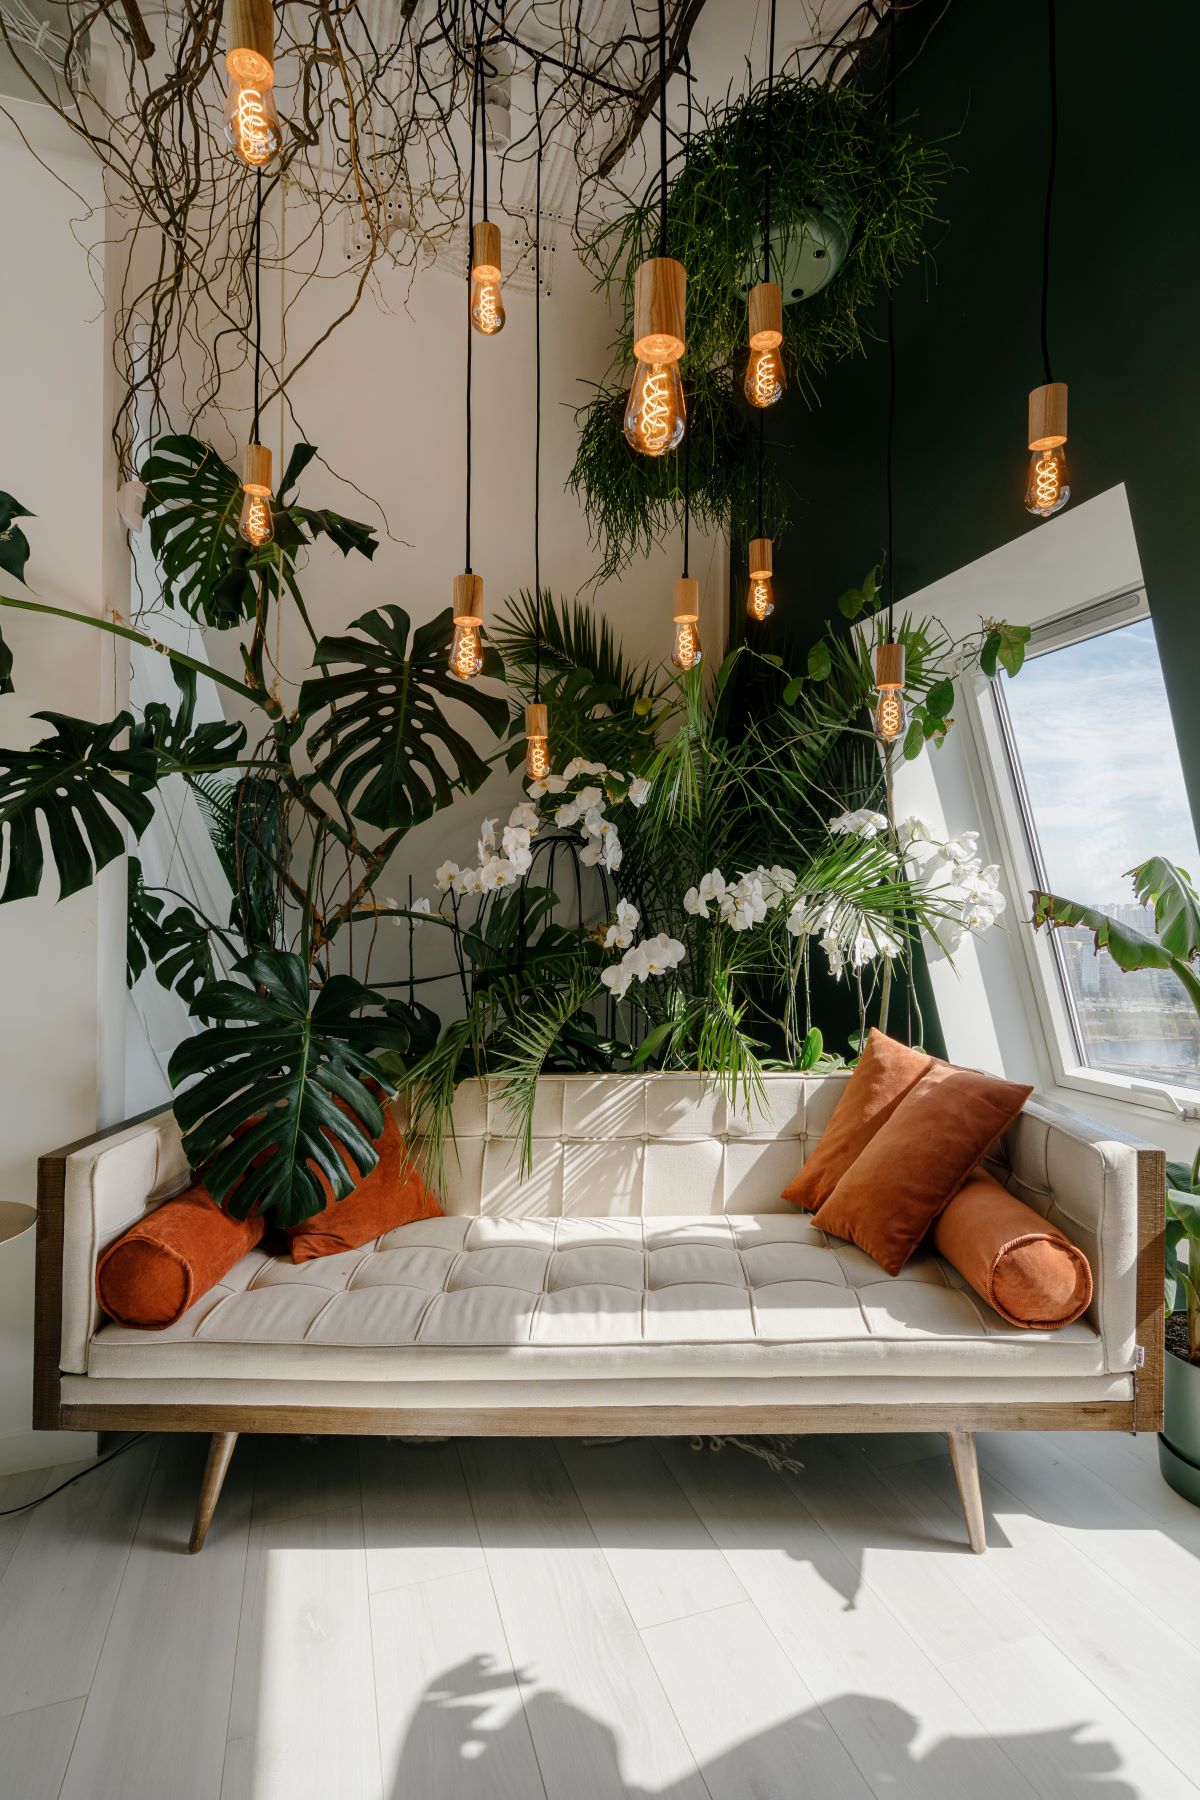 热带boho-style客厅特征与橙色本世纪中叶现代米色沙发枕头和一个大窗口带来充足的自然光照。plant-filled空间还宽,光硬木木板地板和吊坠照明。